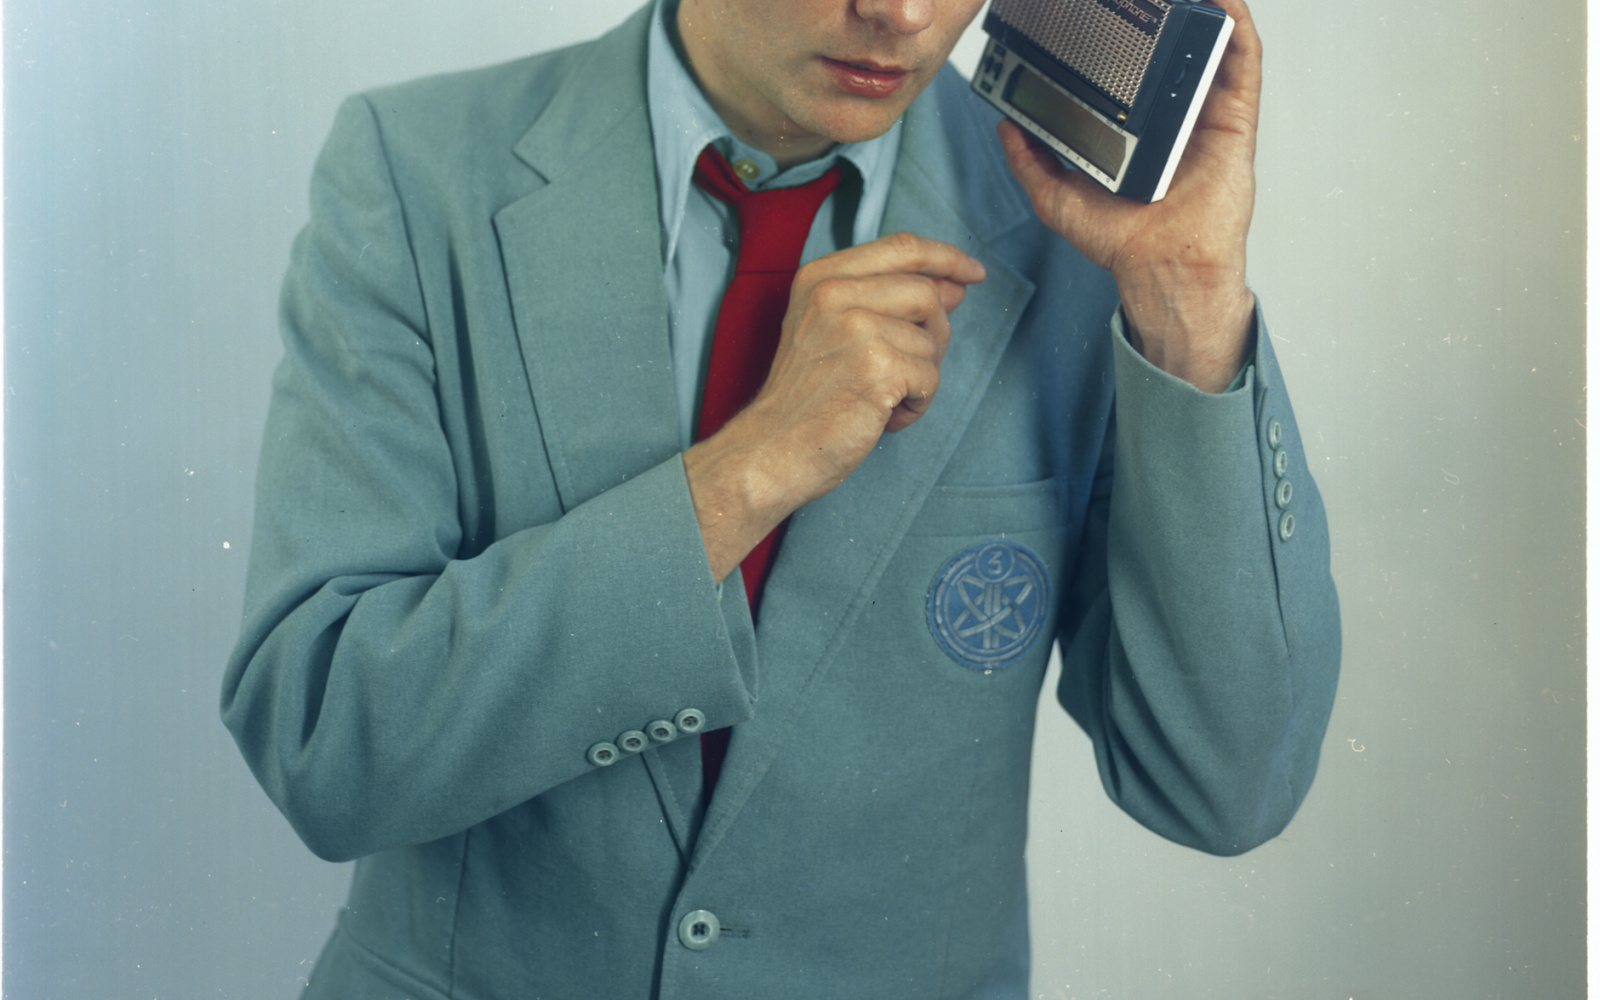 Ein Foto von Felix Kubin in grau-blauem Anzug mit roter Krawatte.